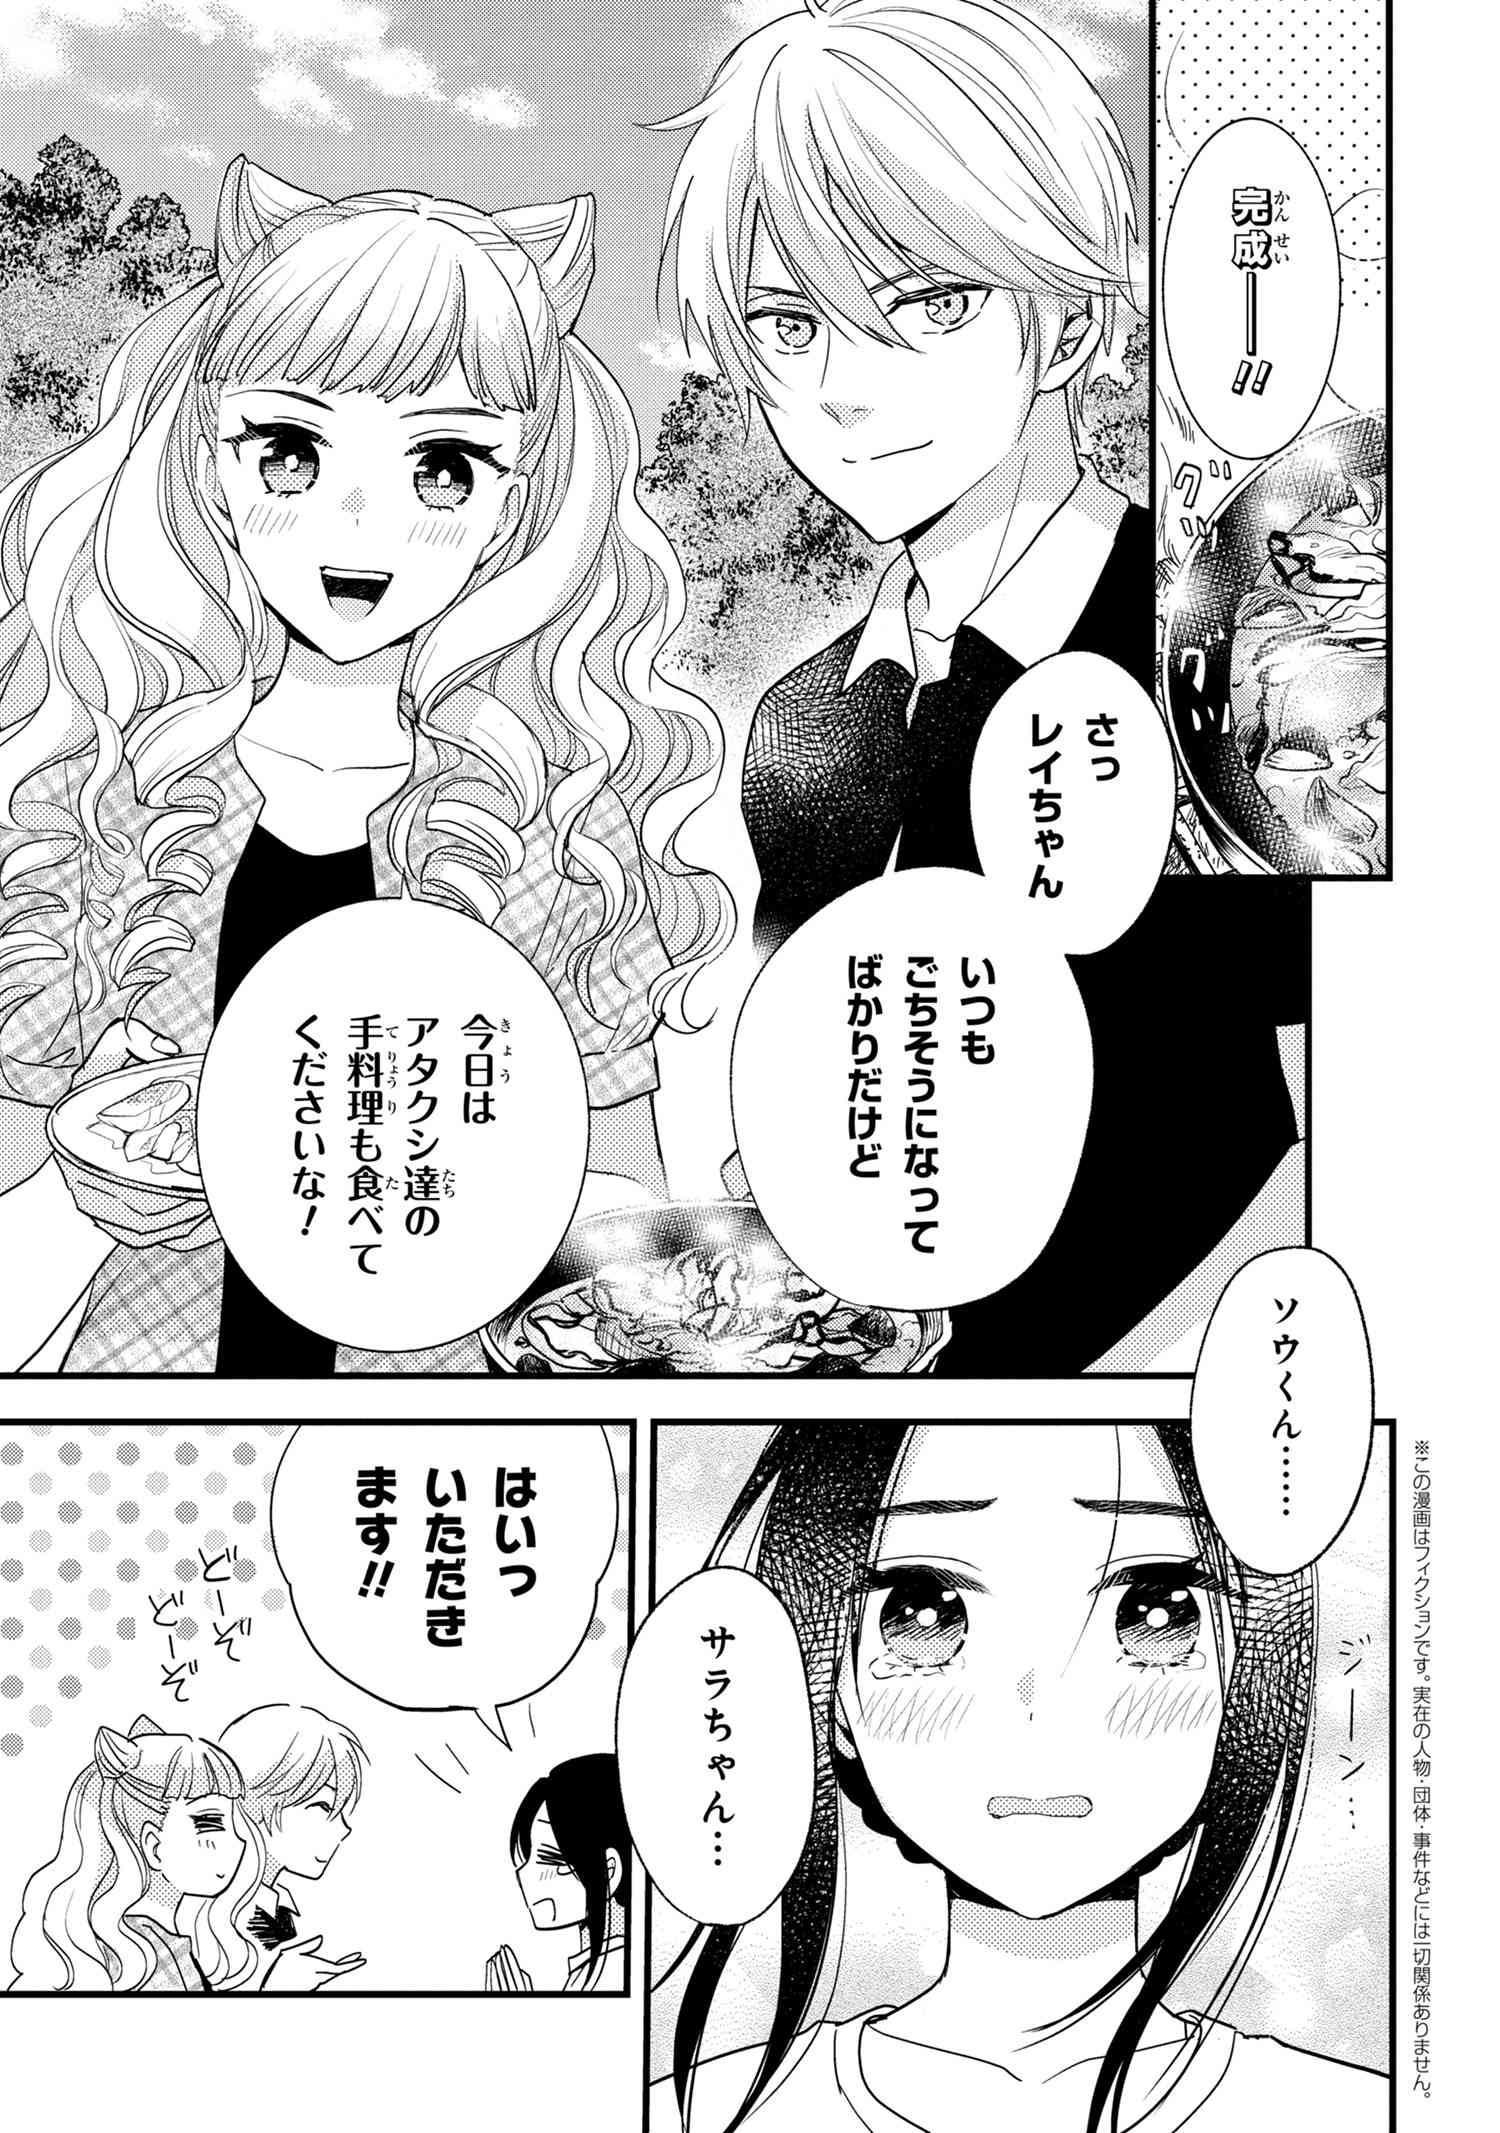 Reiko no Fuugi Akuyaku Reijou to Yobarete imasu ga, tada no Binbou Musume desu - Chapter 12.6 - Page 1